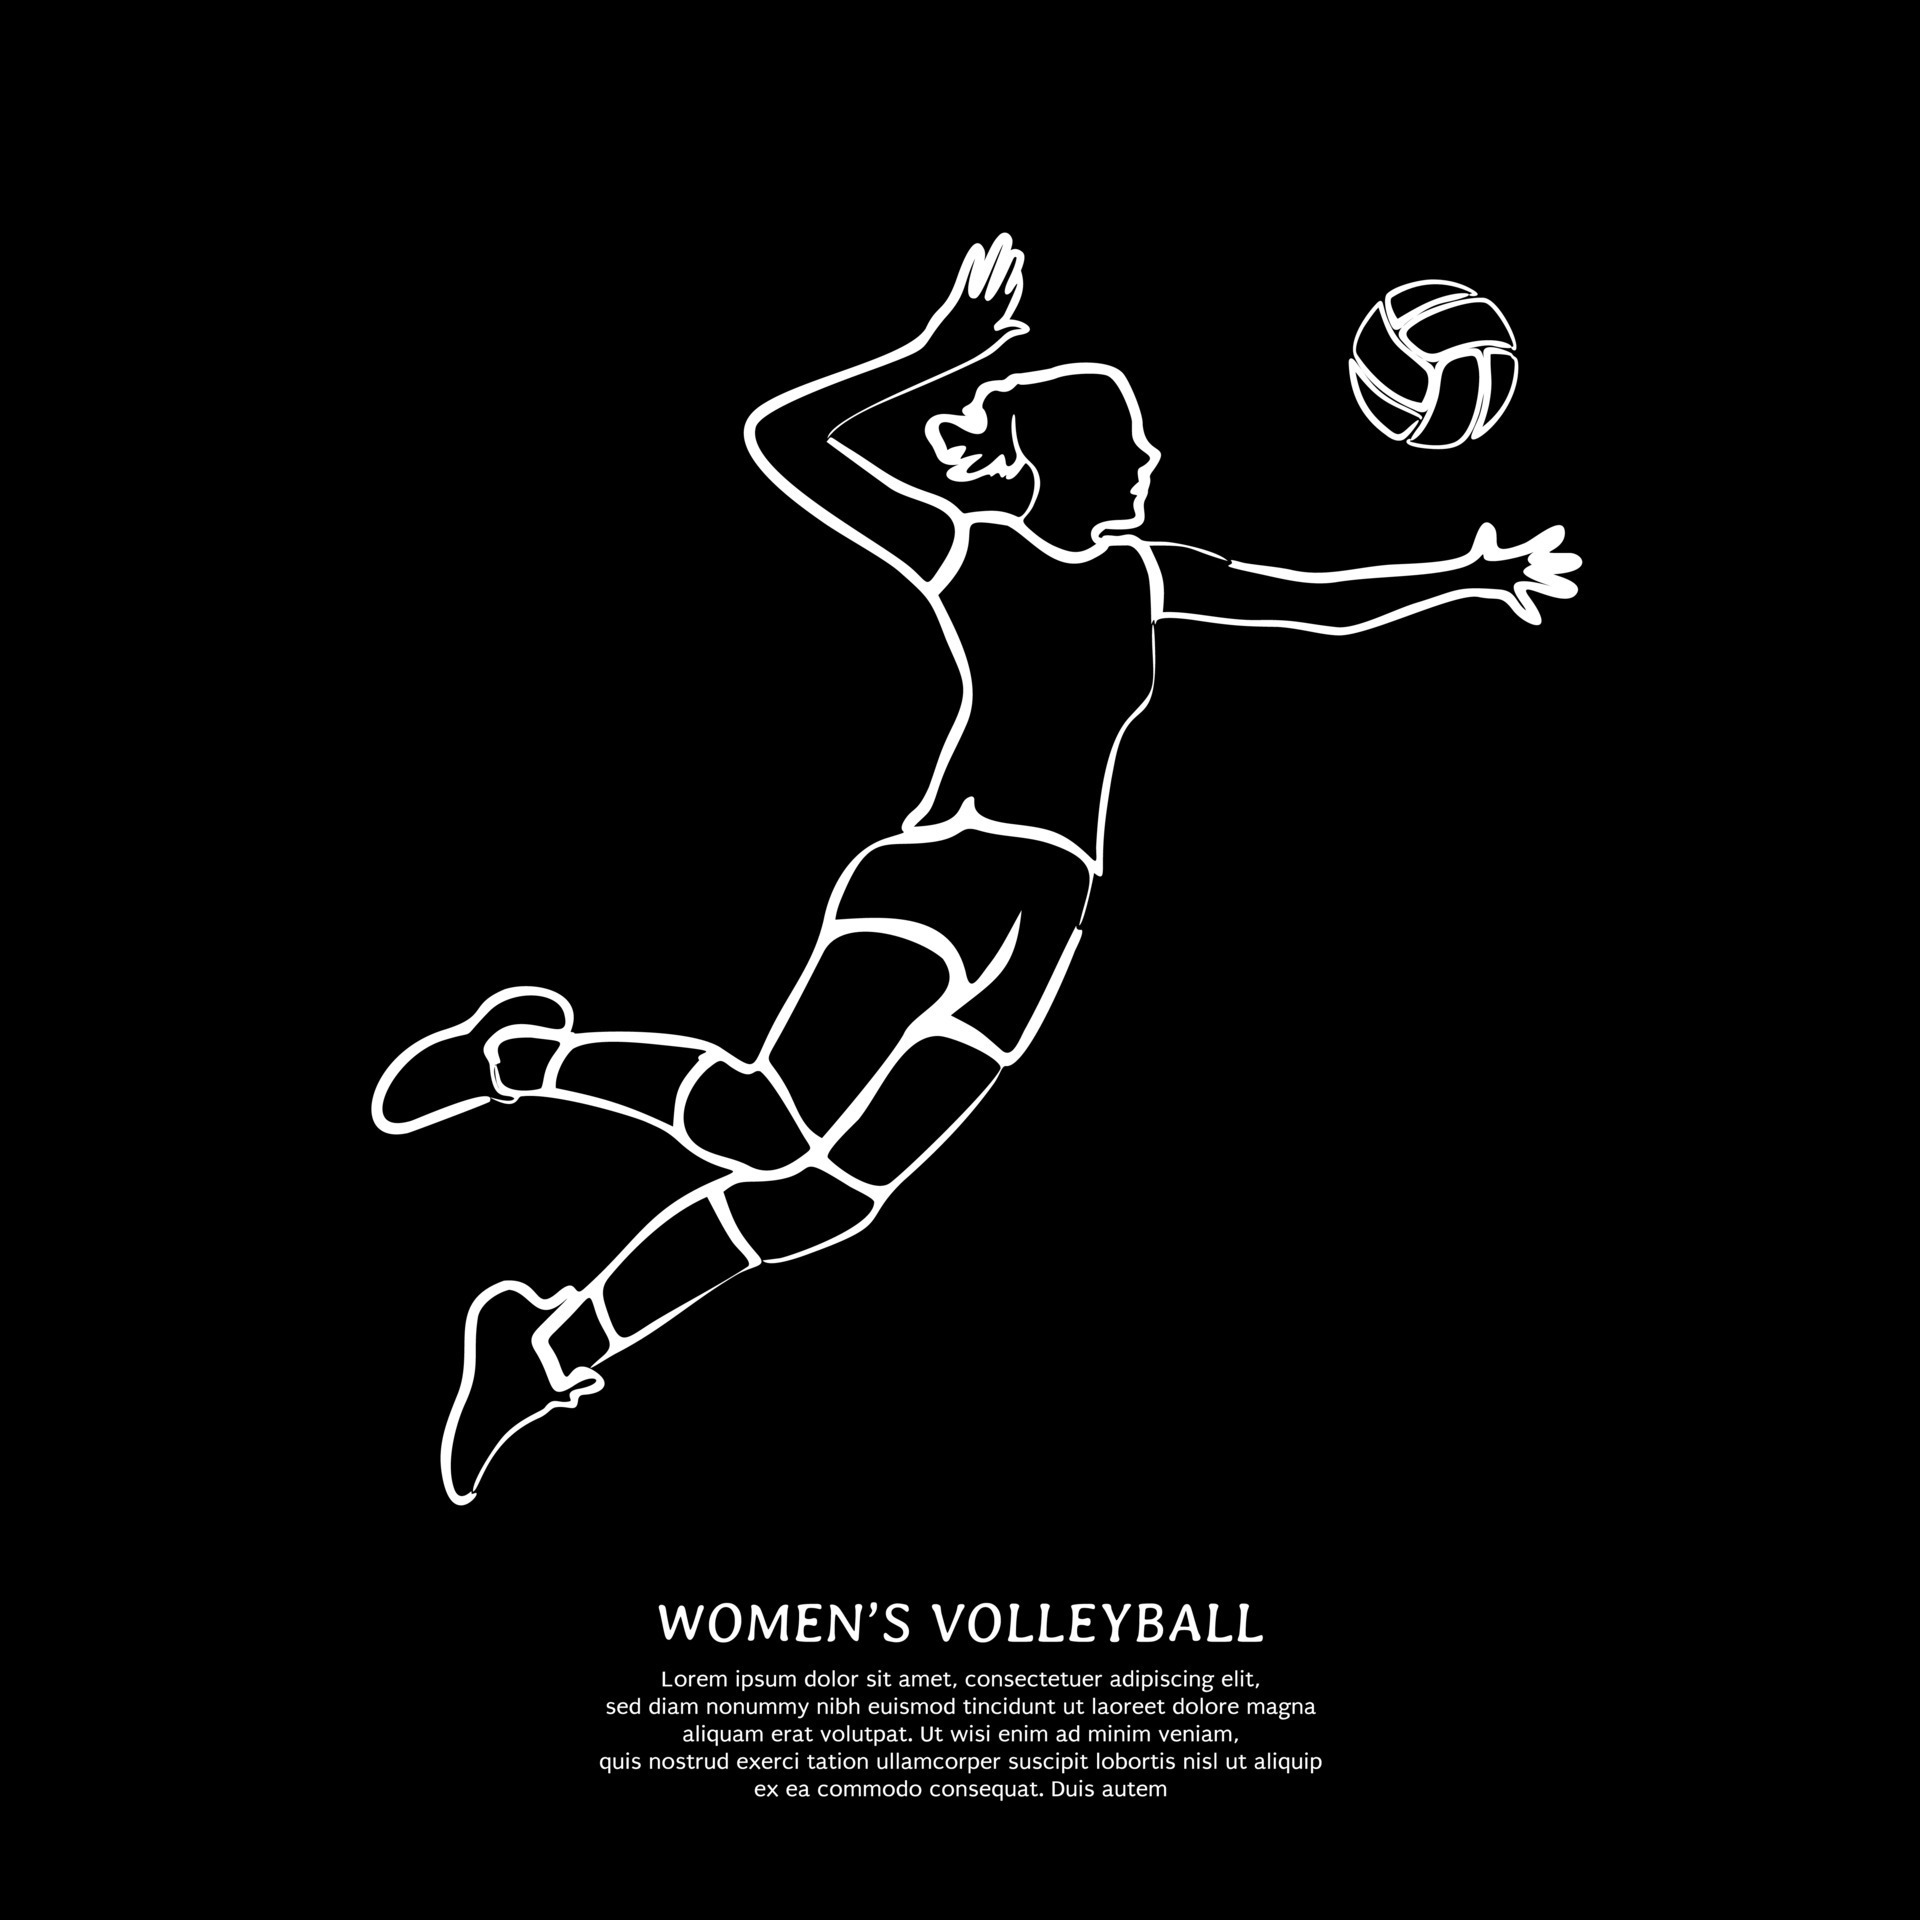 Bộ sưu tập 777 Volleyball black background Đẹp mắt, tải miễn phí